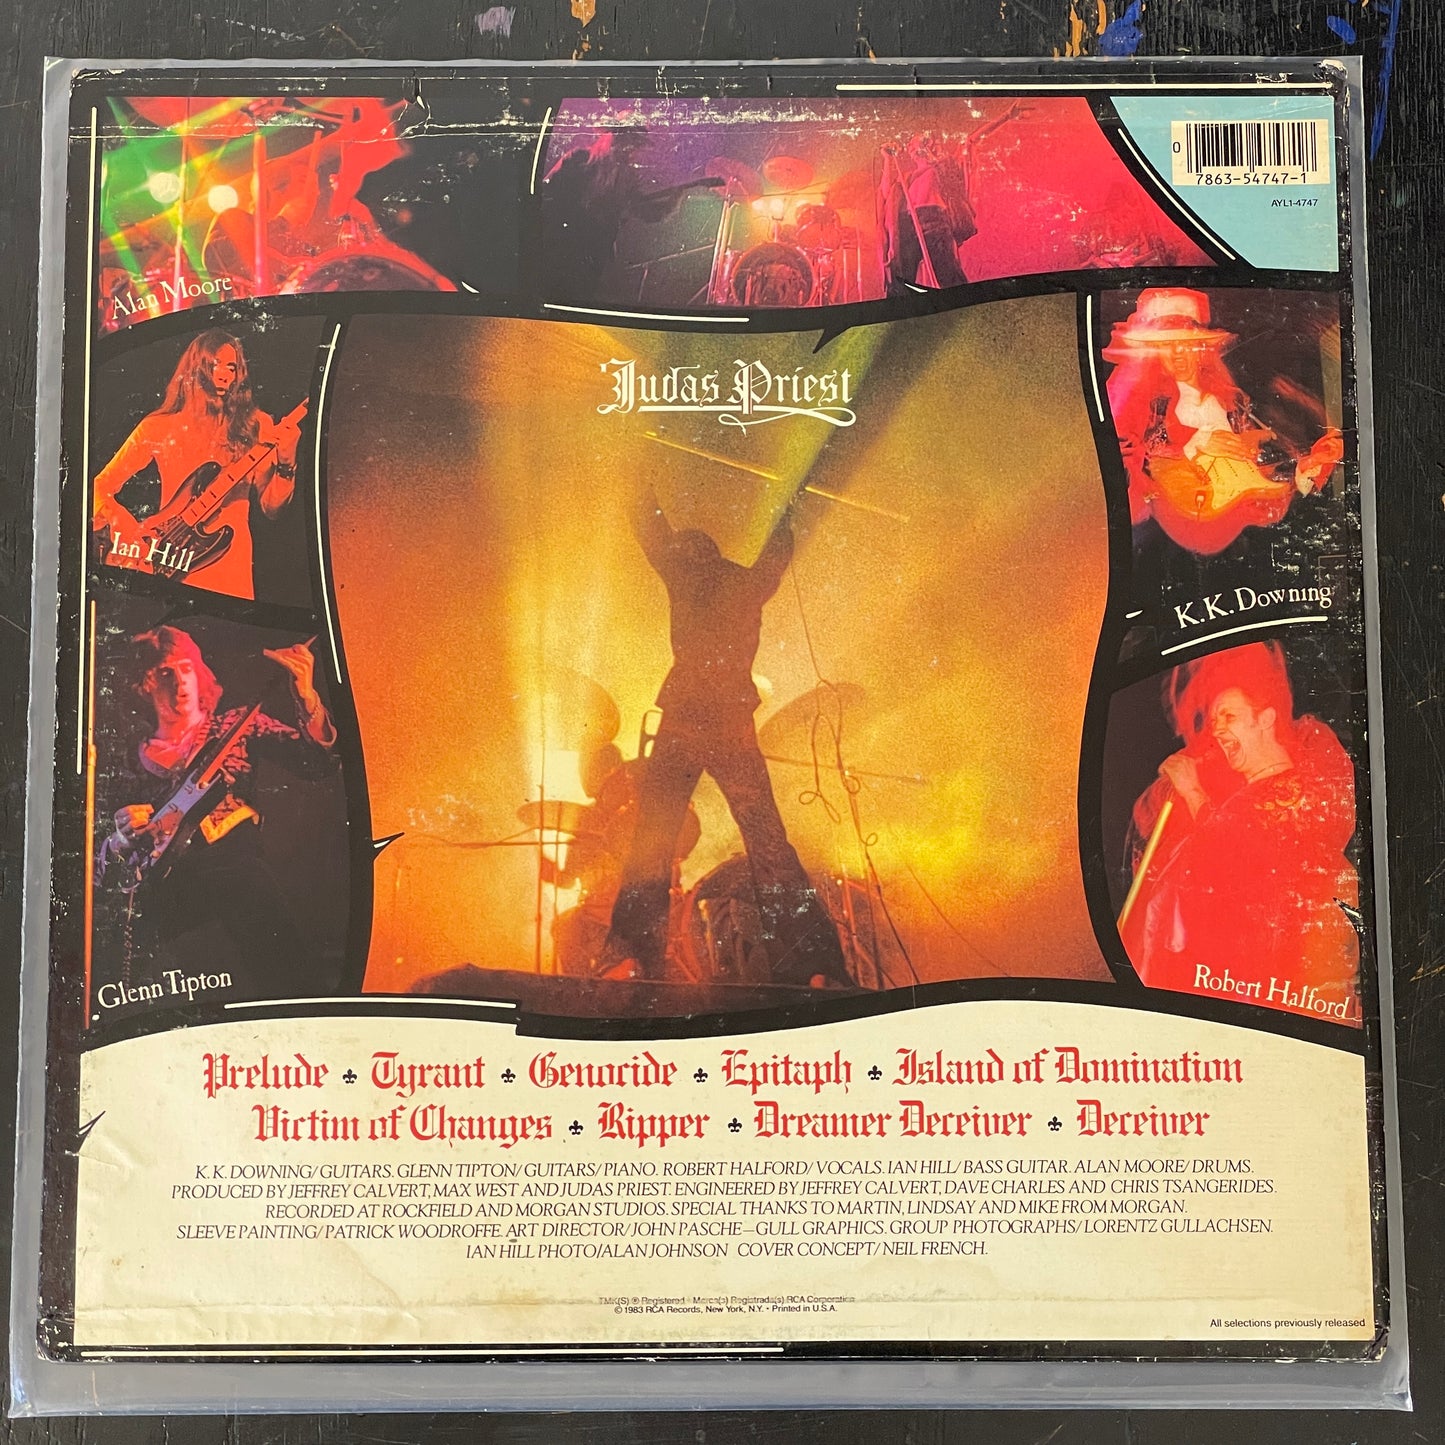 Judas Priest - Sad Wings of Destiny reissue LP (used)